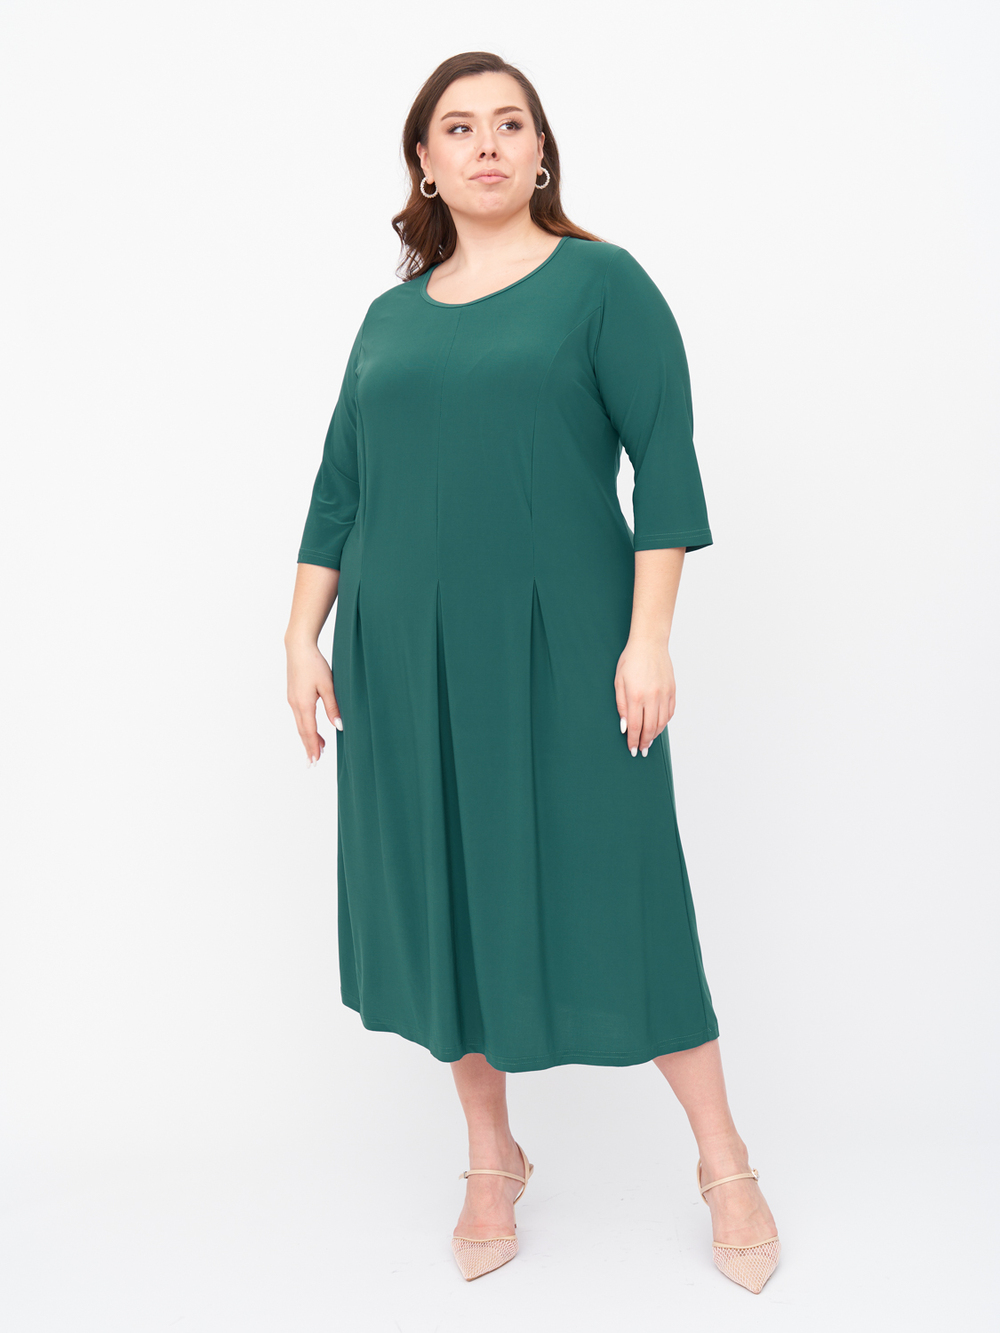 Платье женское ZORY ZPP37107GRN45 зеленое 60-62 RU